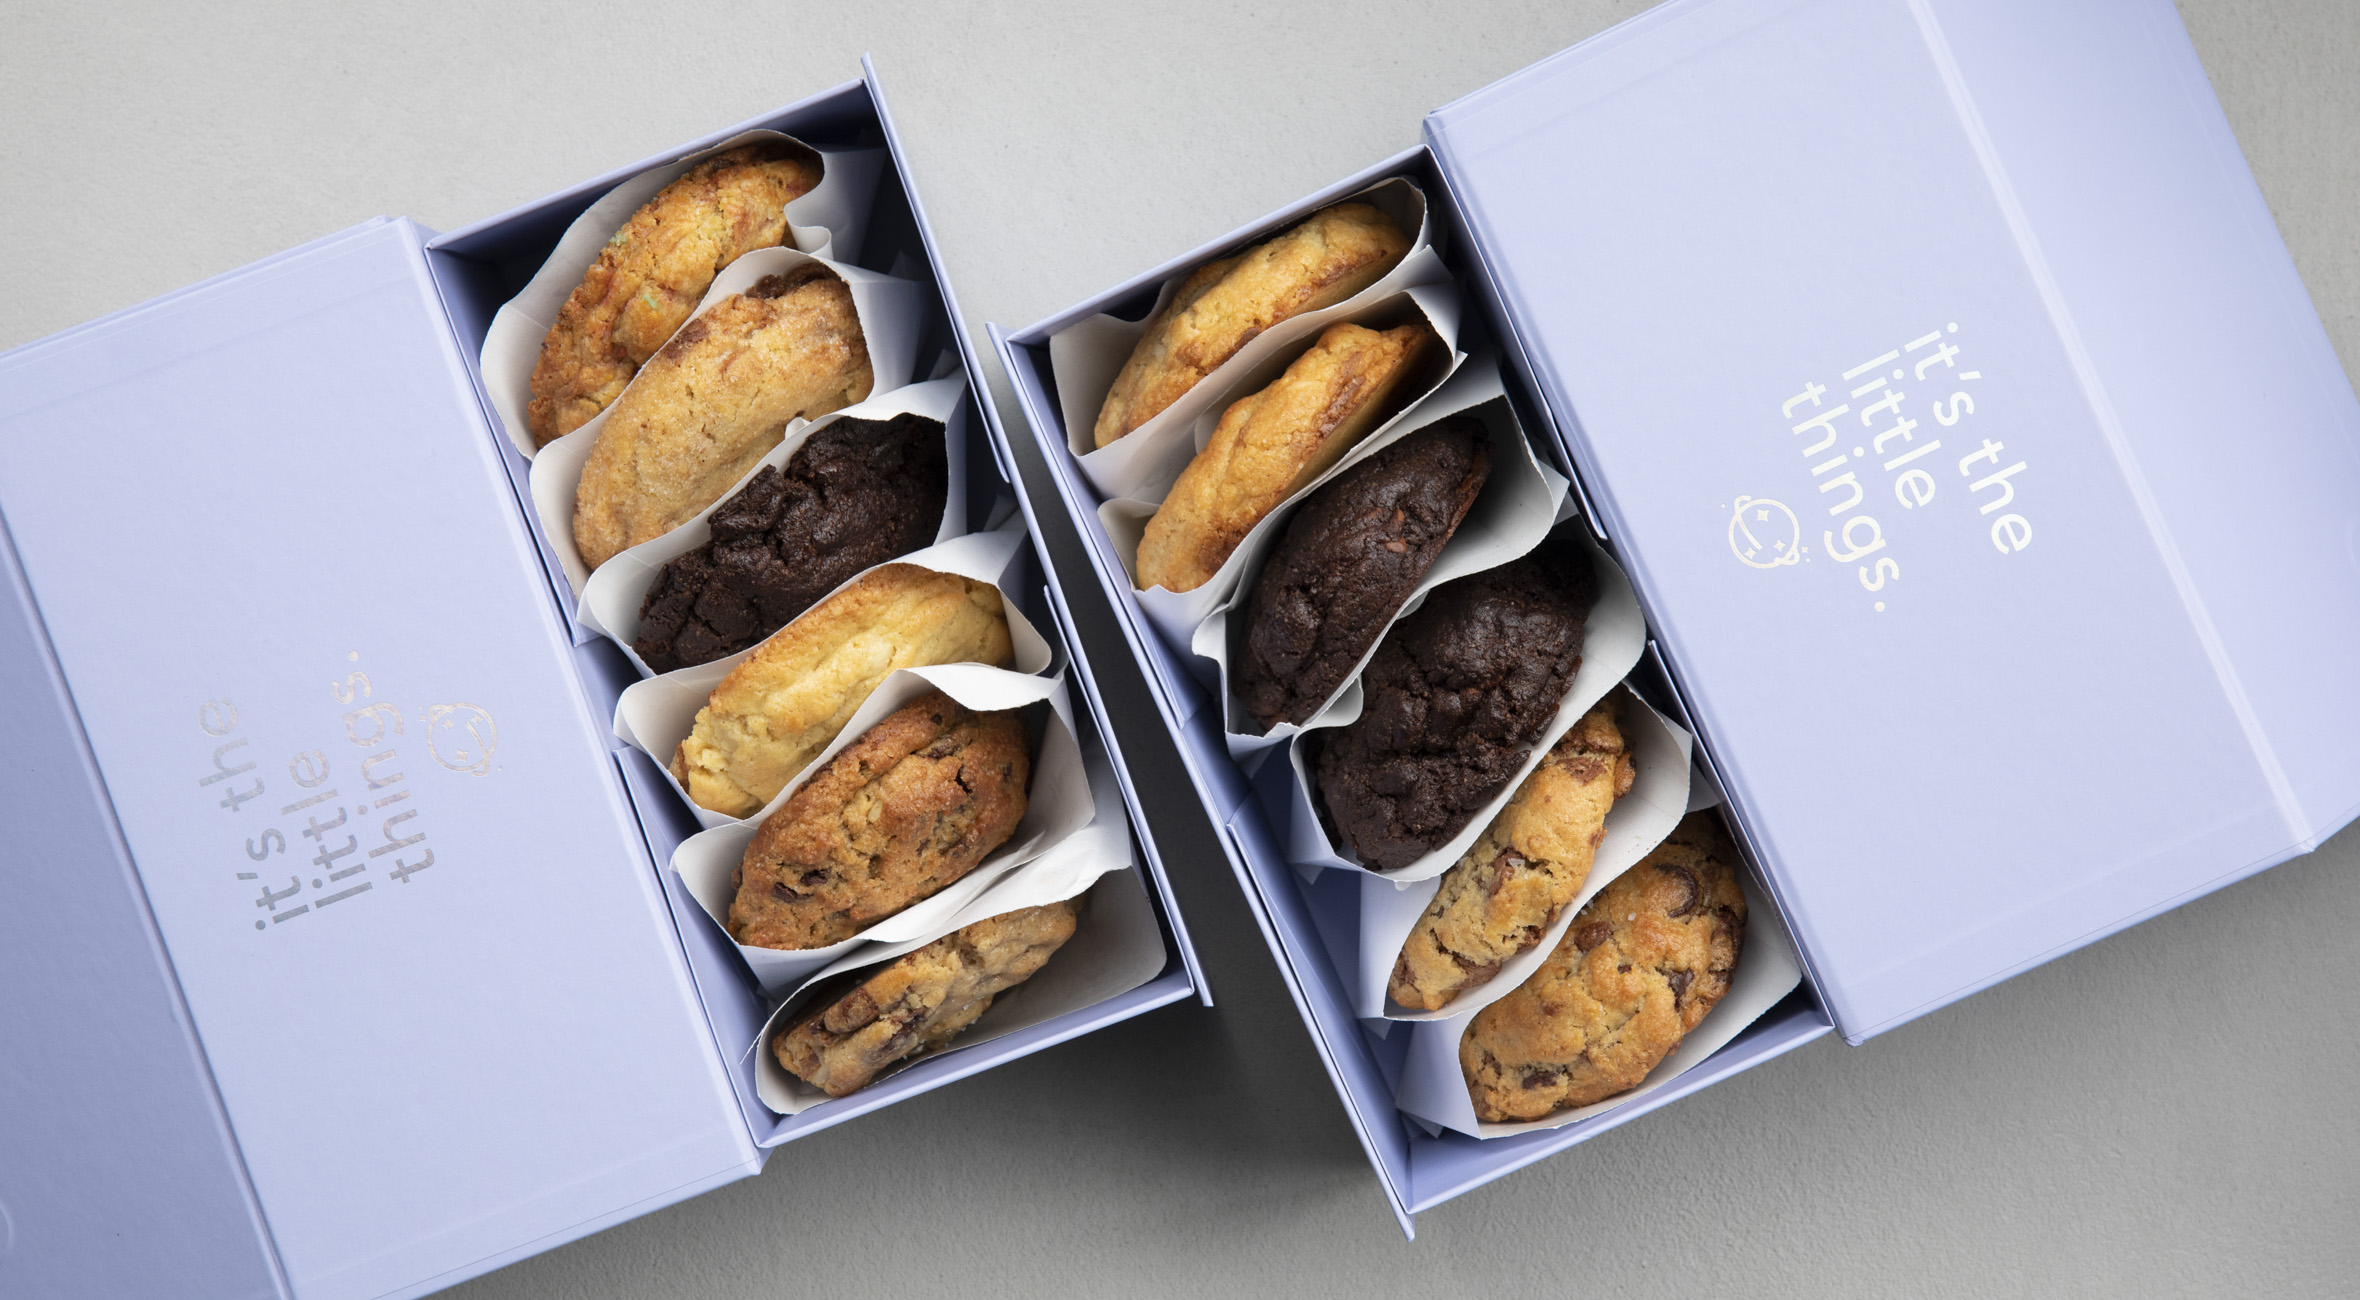 6 cookies hos MUNCHIES – På Christianshavn er der åbnet en New York style cookie shop og en vild en af slagsen